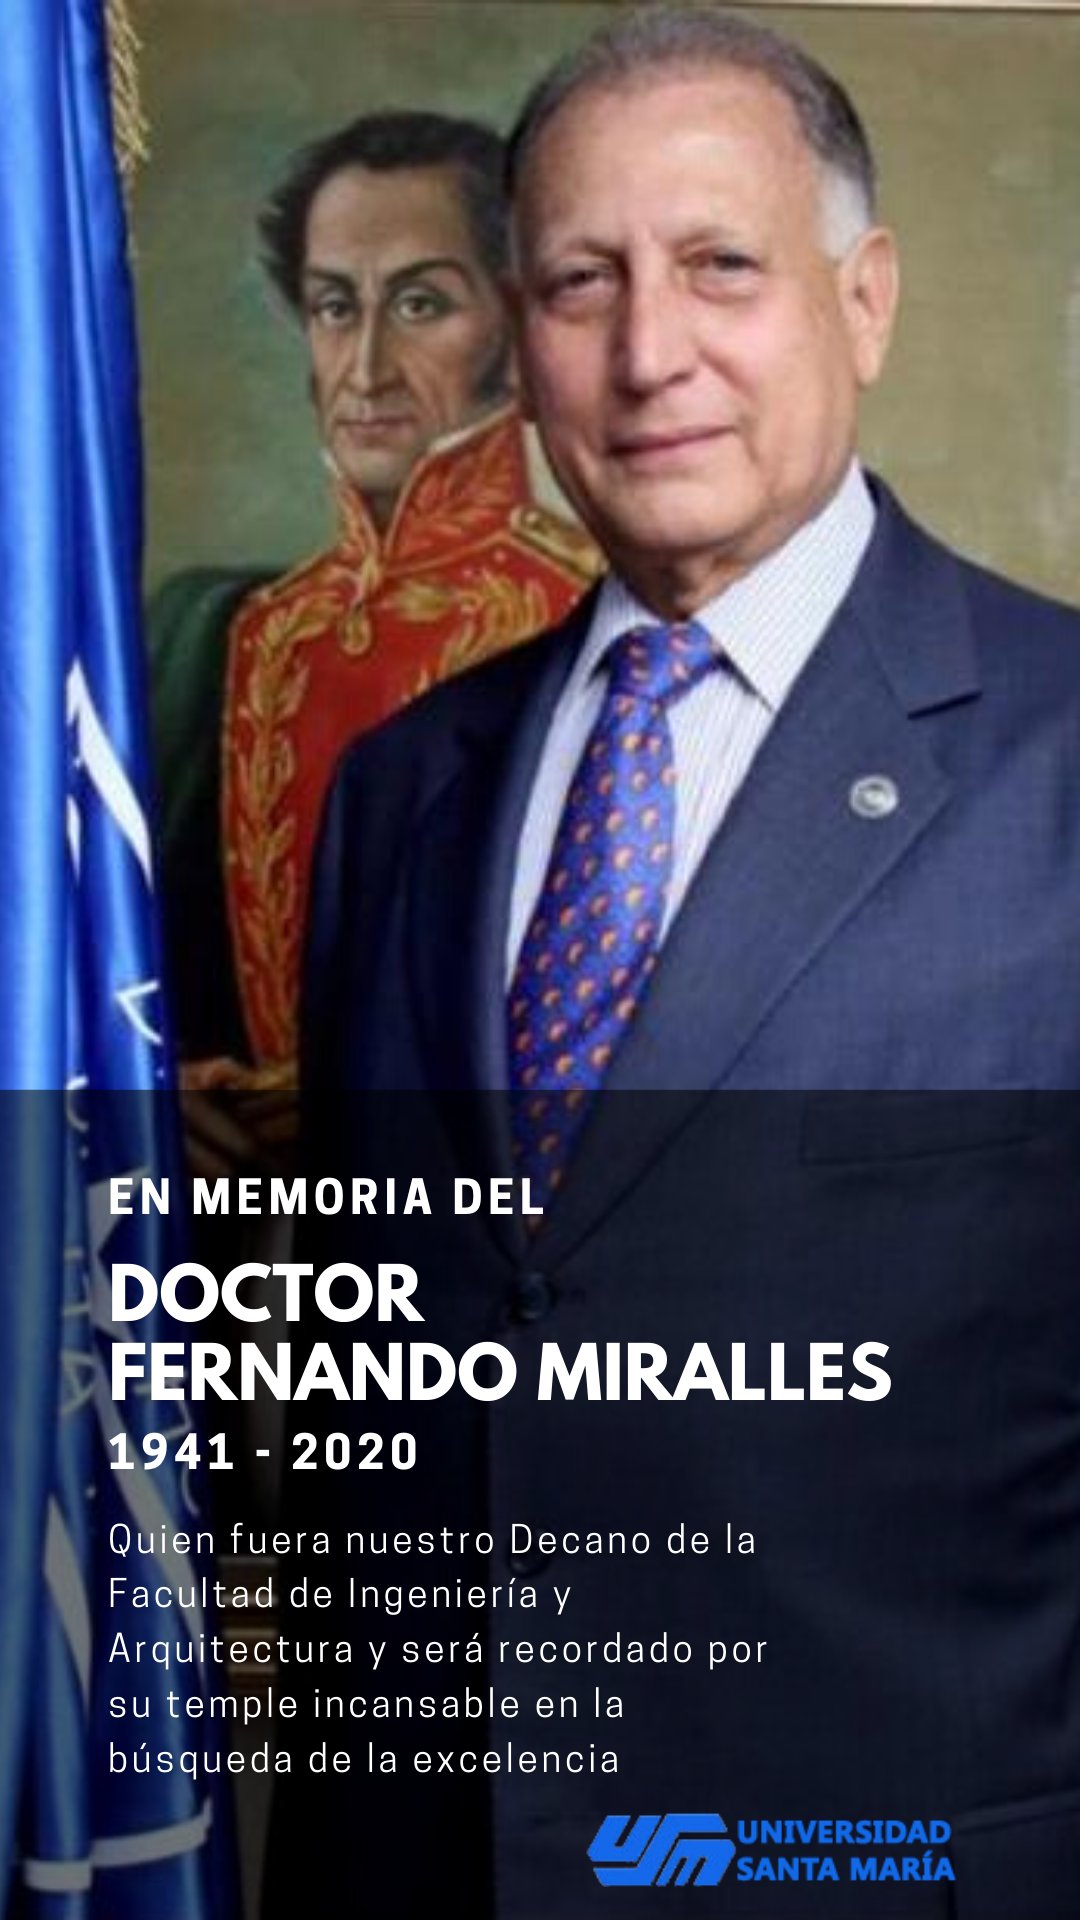 Universidad Santa María on X: En memoria del Doctor Fernando Miralles   / X